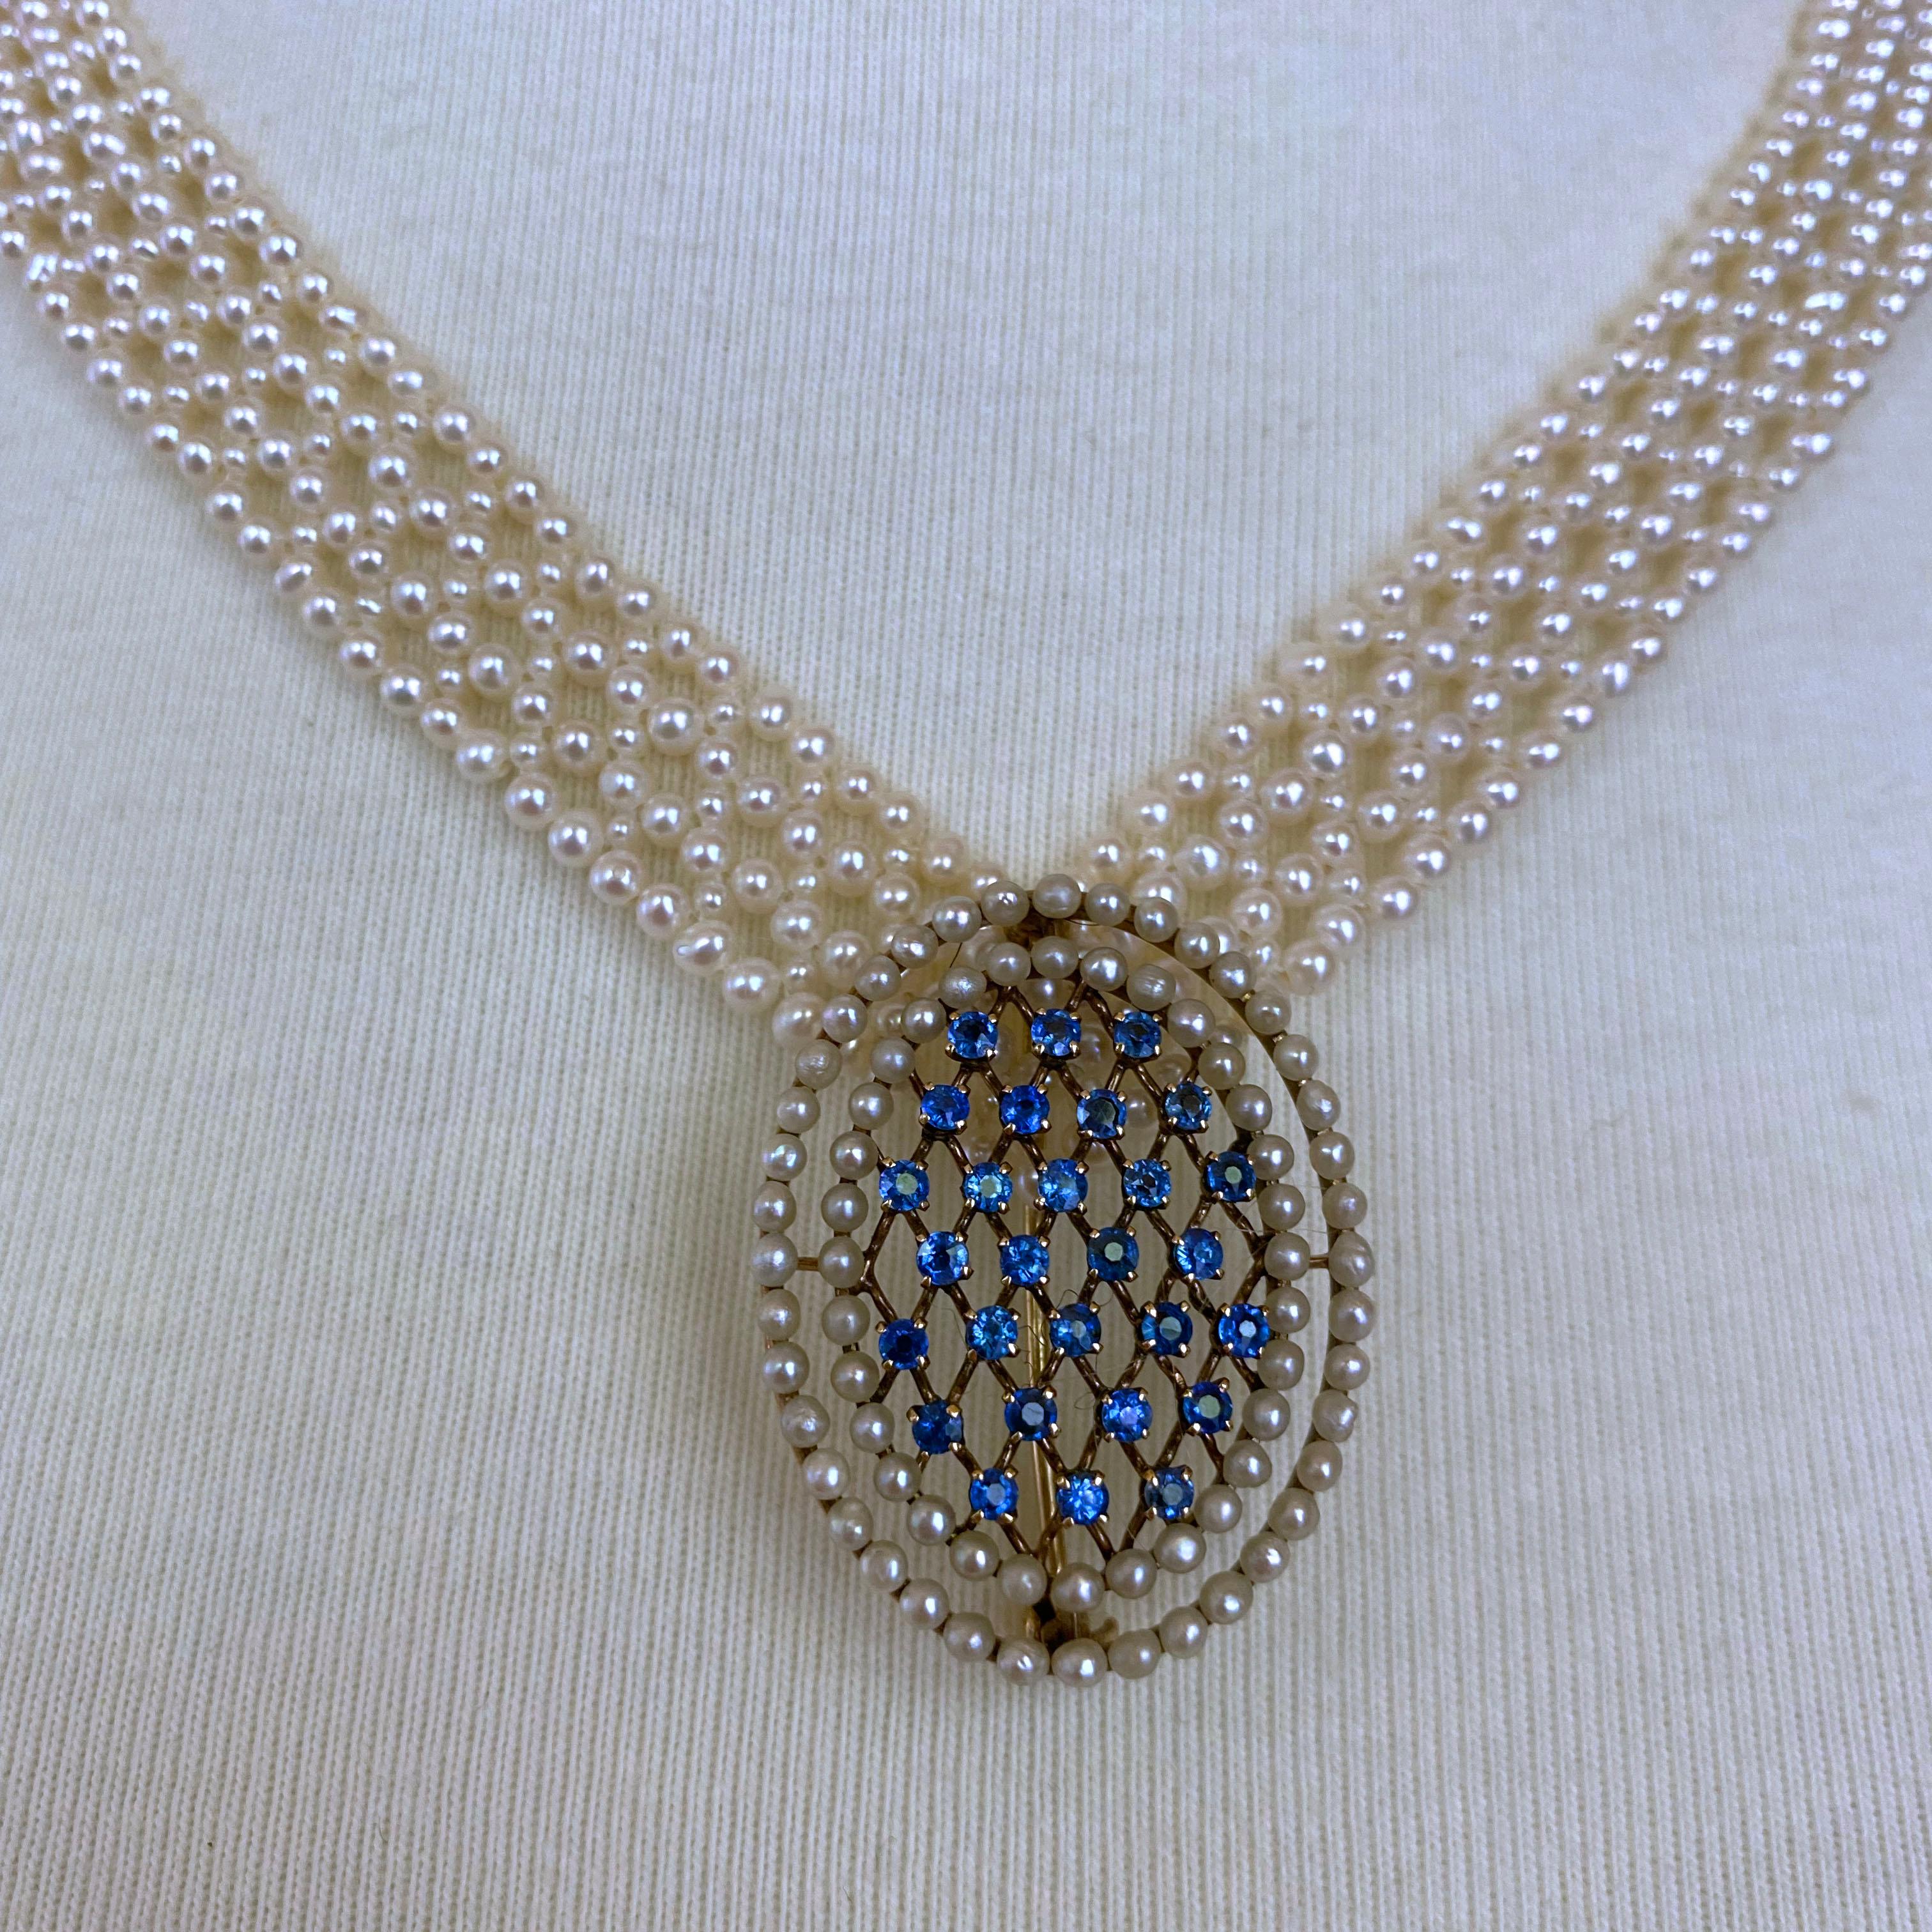 Ein wunderschönes Stück von Marina J. Diese atemberaubende Halskette besteht aus echten weißen Zuchtperlen, die in einem engen, spitzenähnlichen Design miteinander verwoben sind. V-förmig gewebt, betont es perfekt Hals und Dekolleté. Das Perlenband